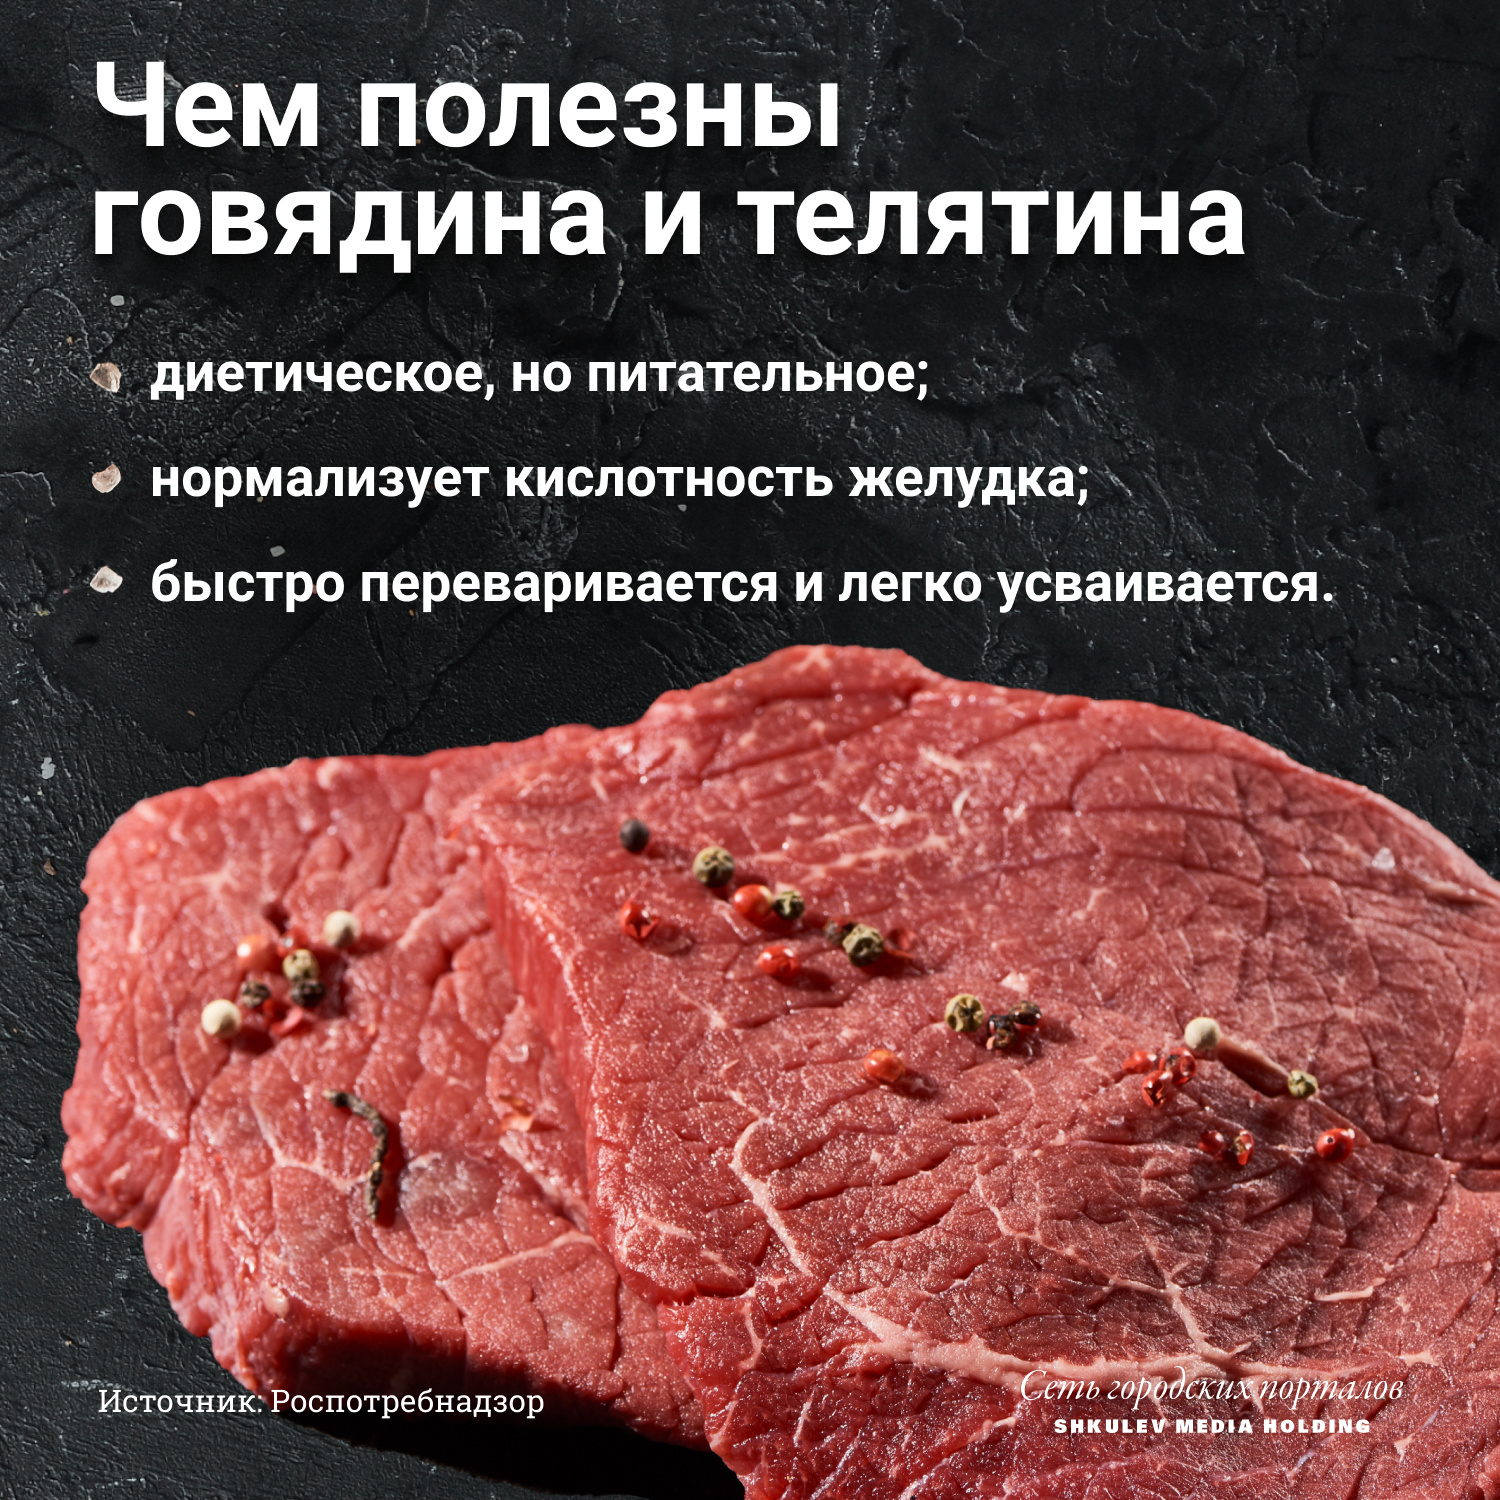 Говядина считается диетическим мясом, абсолютно безопасным для здоровья. Блюда из нее врачи рекомендуют есть даже людям с хроническими заболеваниями